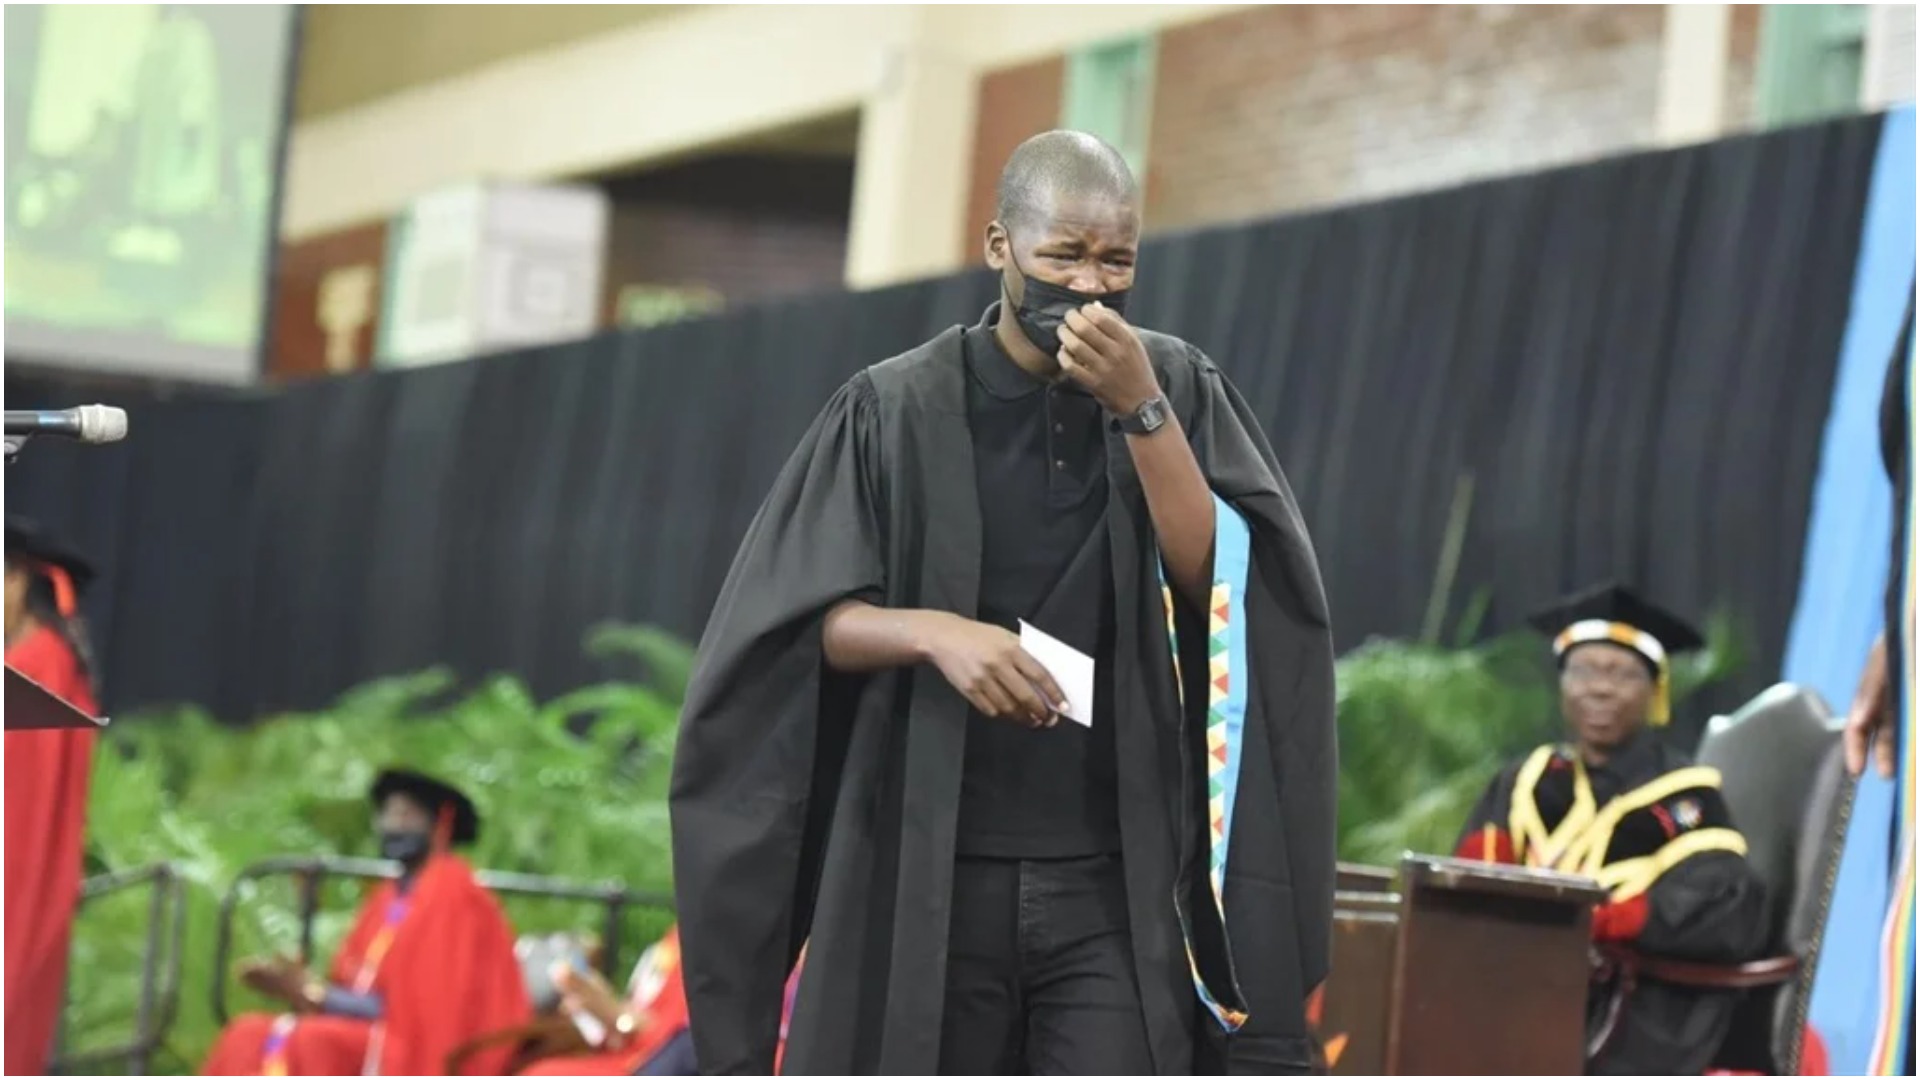 It Ended In Tears Of Joy: Crying  UKZN Student Dumisani Ngobesi Offered Permanent Job & Full Funding